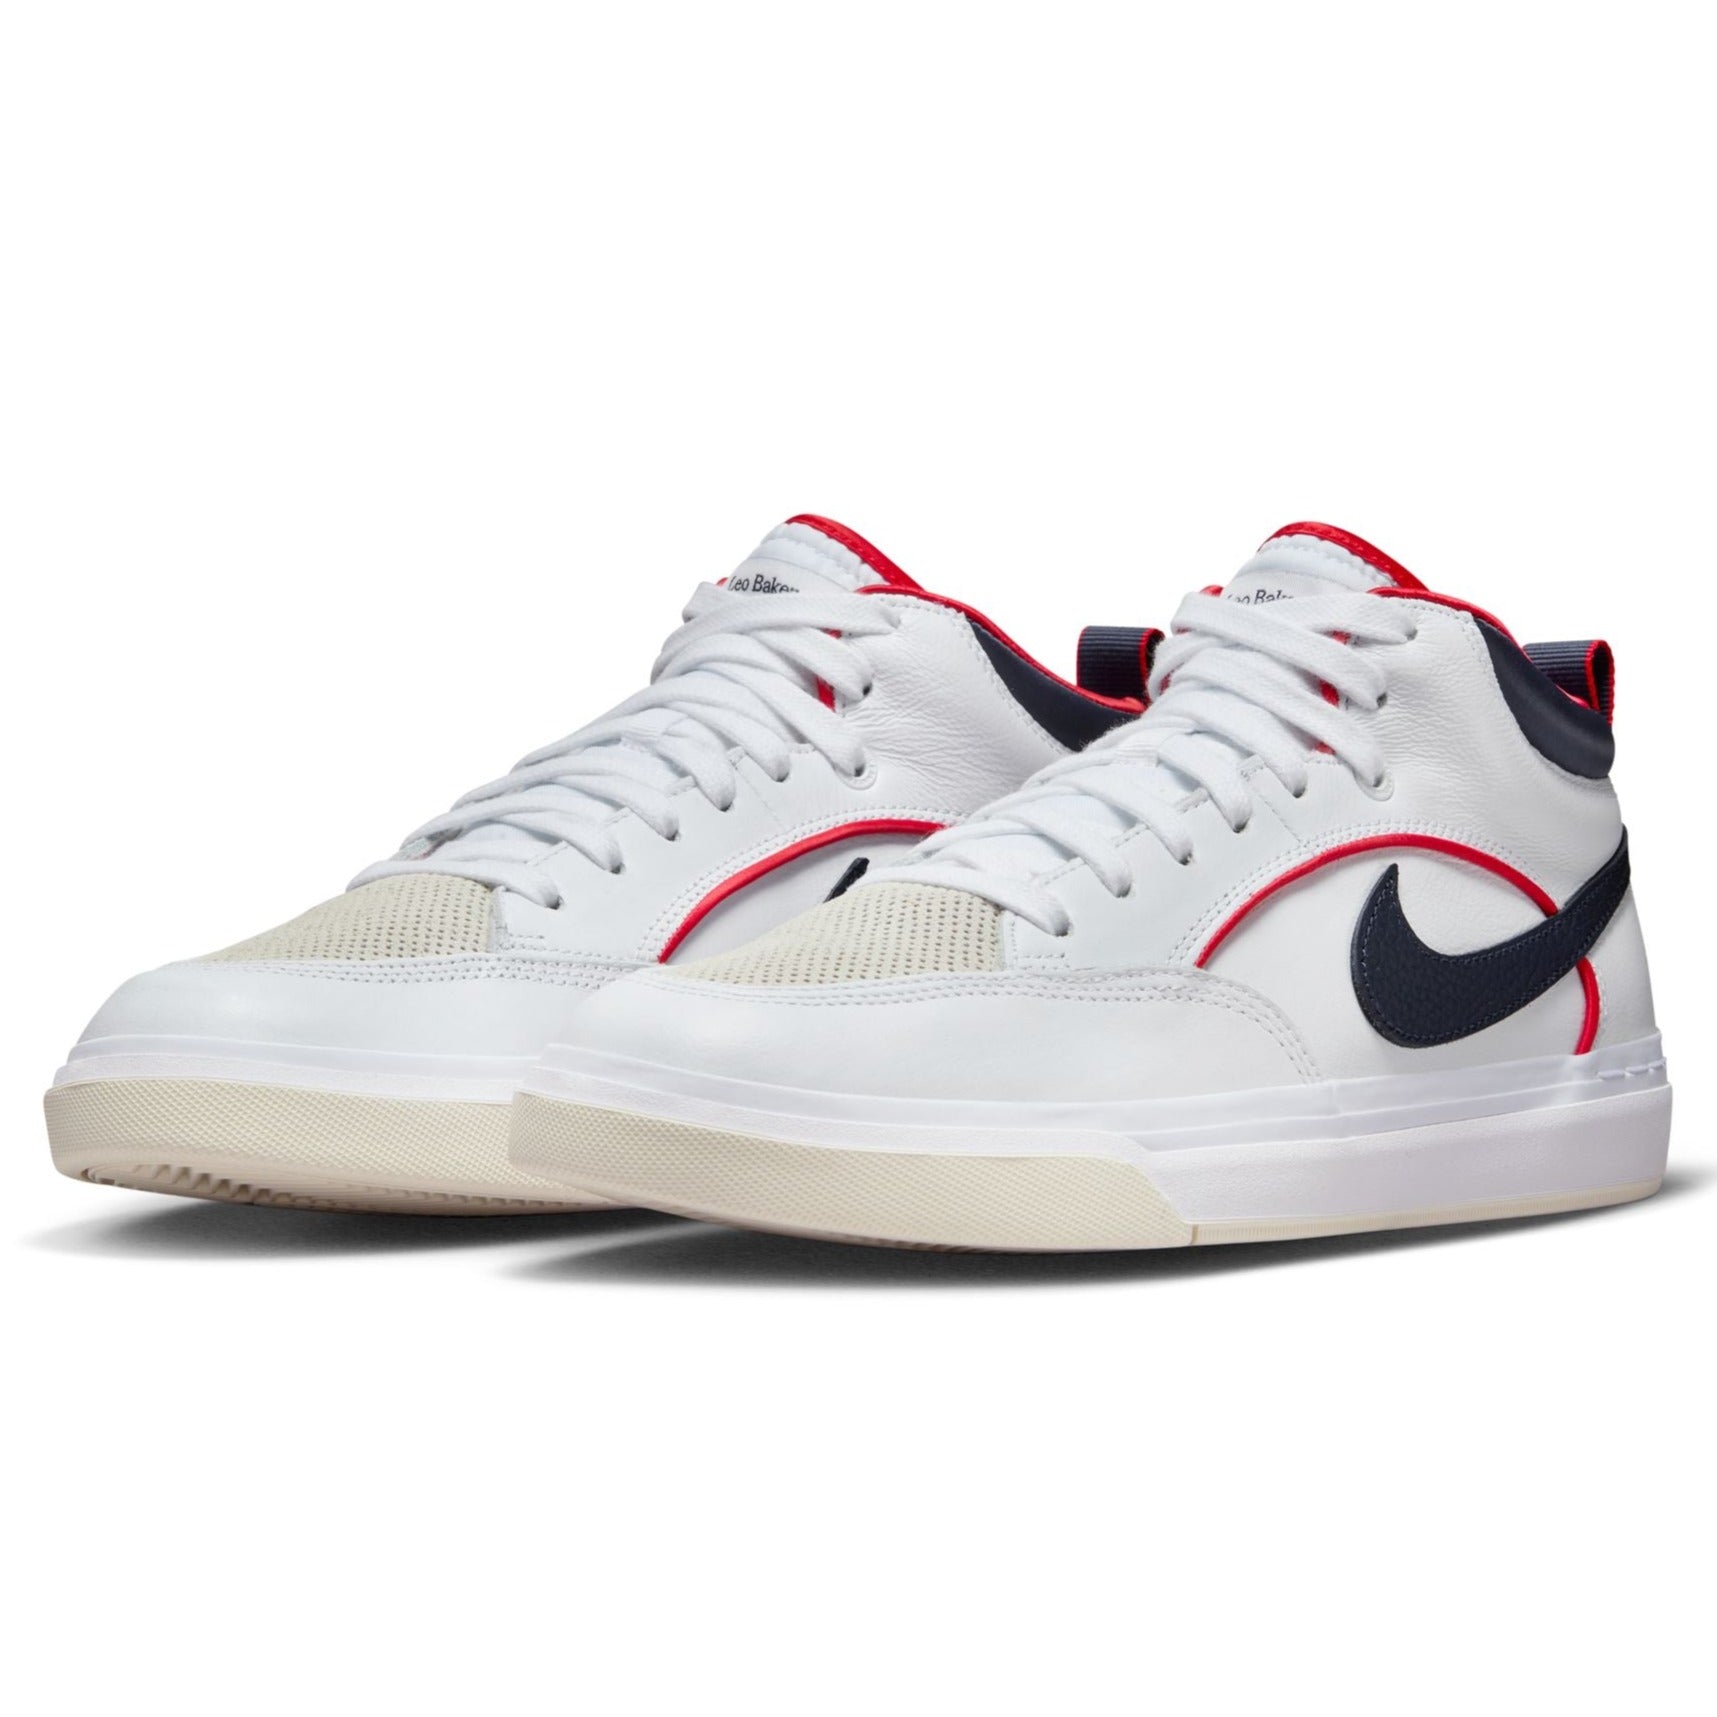 White/Navy Leo Baker Premium React Nike SB Skate Shoe Front